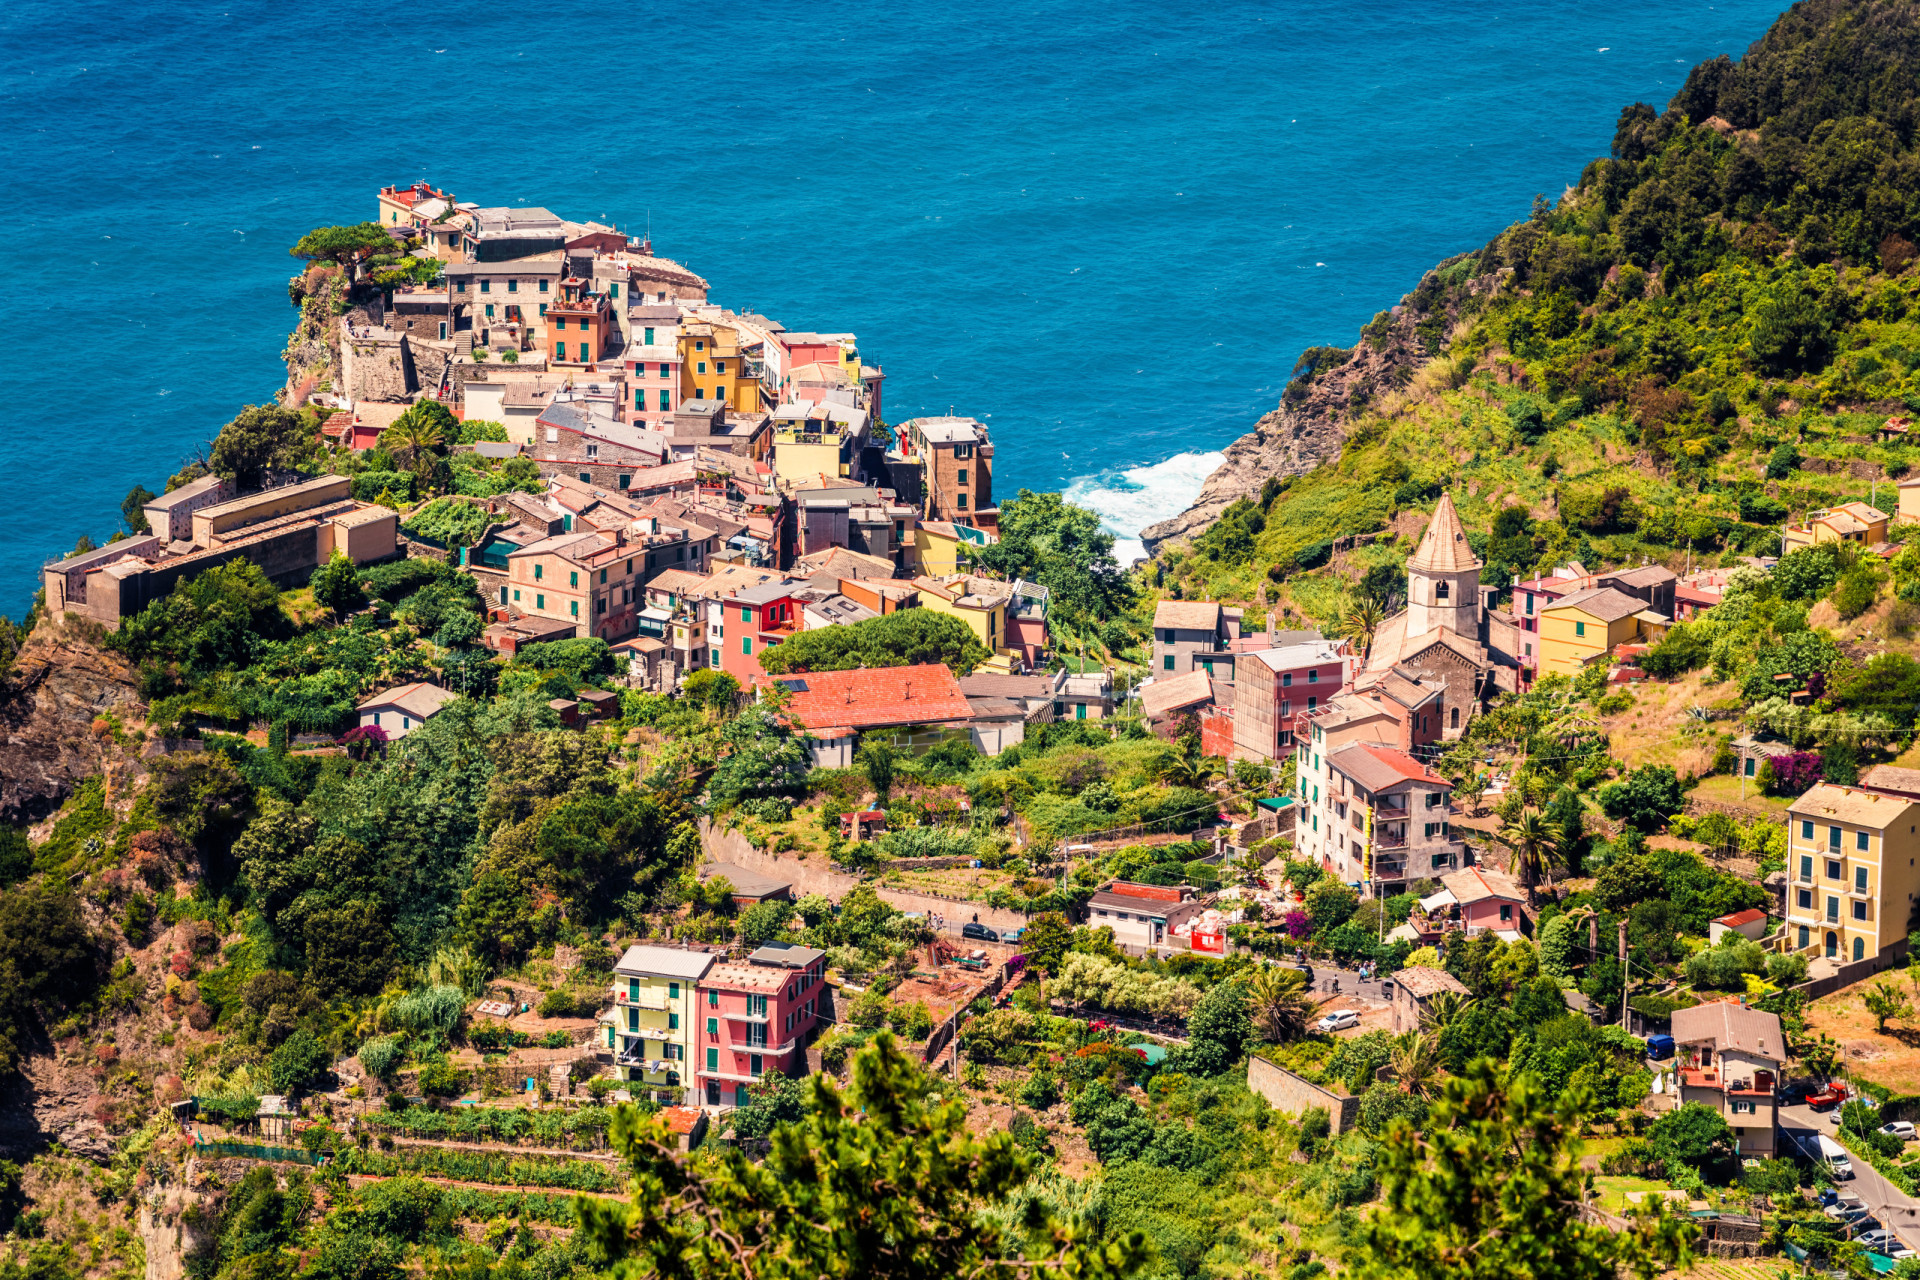 <p>Corniglia est l'un des célèbres villages des Cinque Terre, un chapelet de villages pittoresques qui bordent la région côtière de la Ligurie. Corniglia se trouve sur un promontoire de 100 mètres entouré sur trois côtés de vignobles et de terrasses. Inutile de dire que les vues sont tout simplement à couper le souffle.</p><p>Tu pourrais aussi aimer:<a href="https://www.starsinsider.com/n/459785?utm_source=msn.com&utm_medium=display&utm_campaign=referral_description&utm_content=612932"> Ces films sur l'histoire des Noirs à ne pas manquer !</a></p>